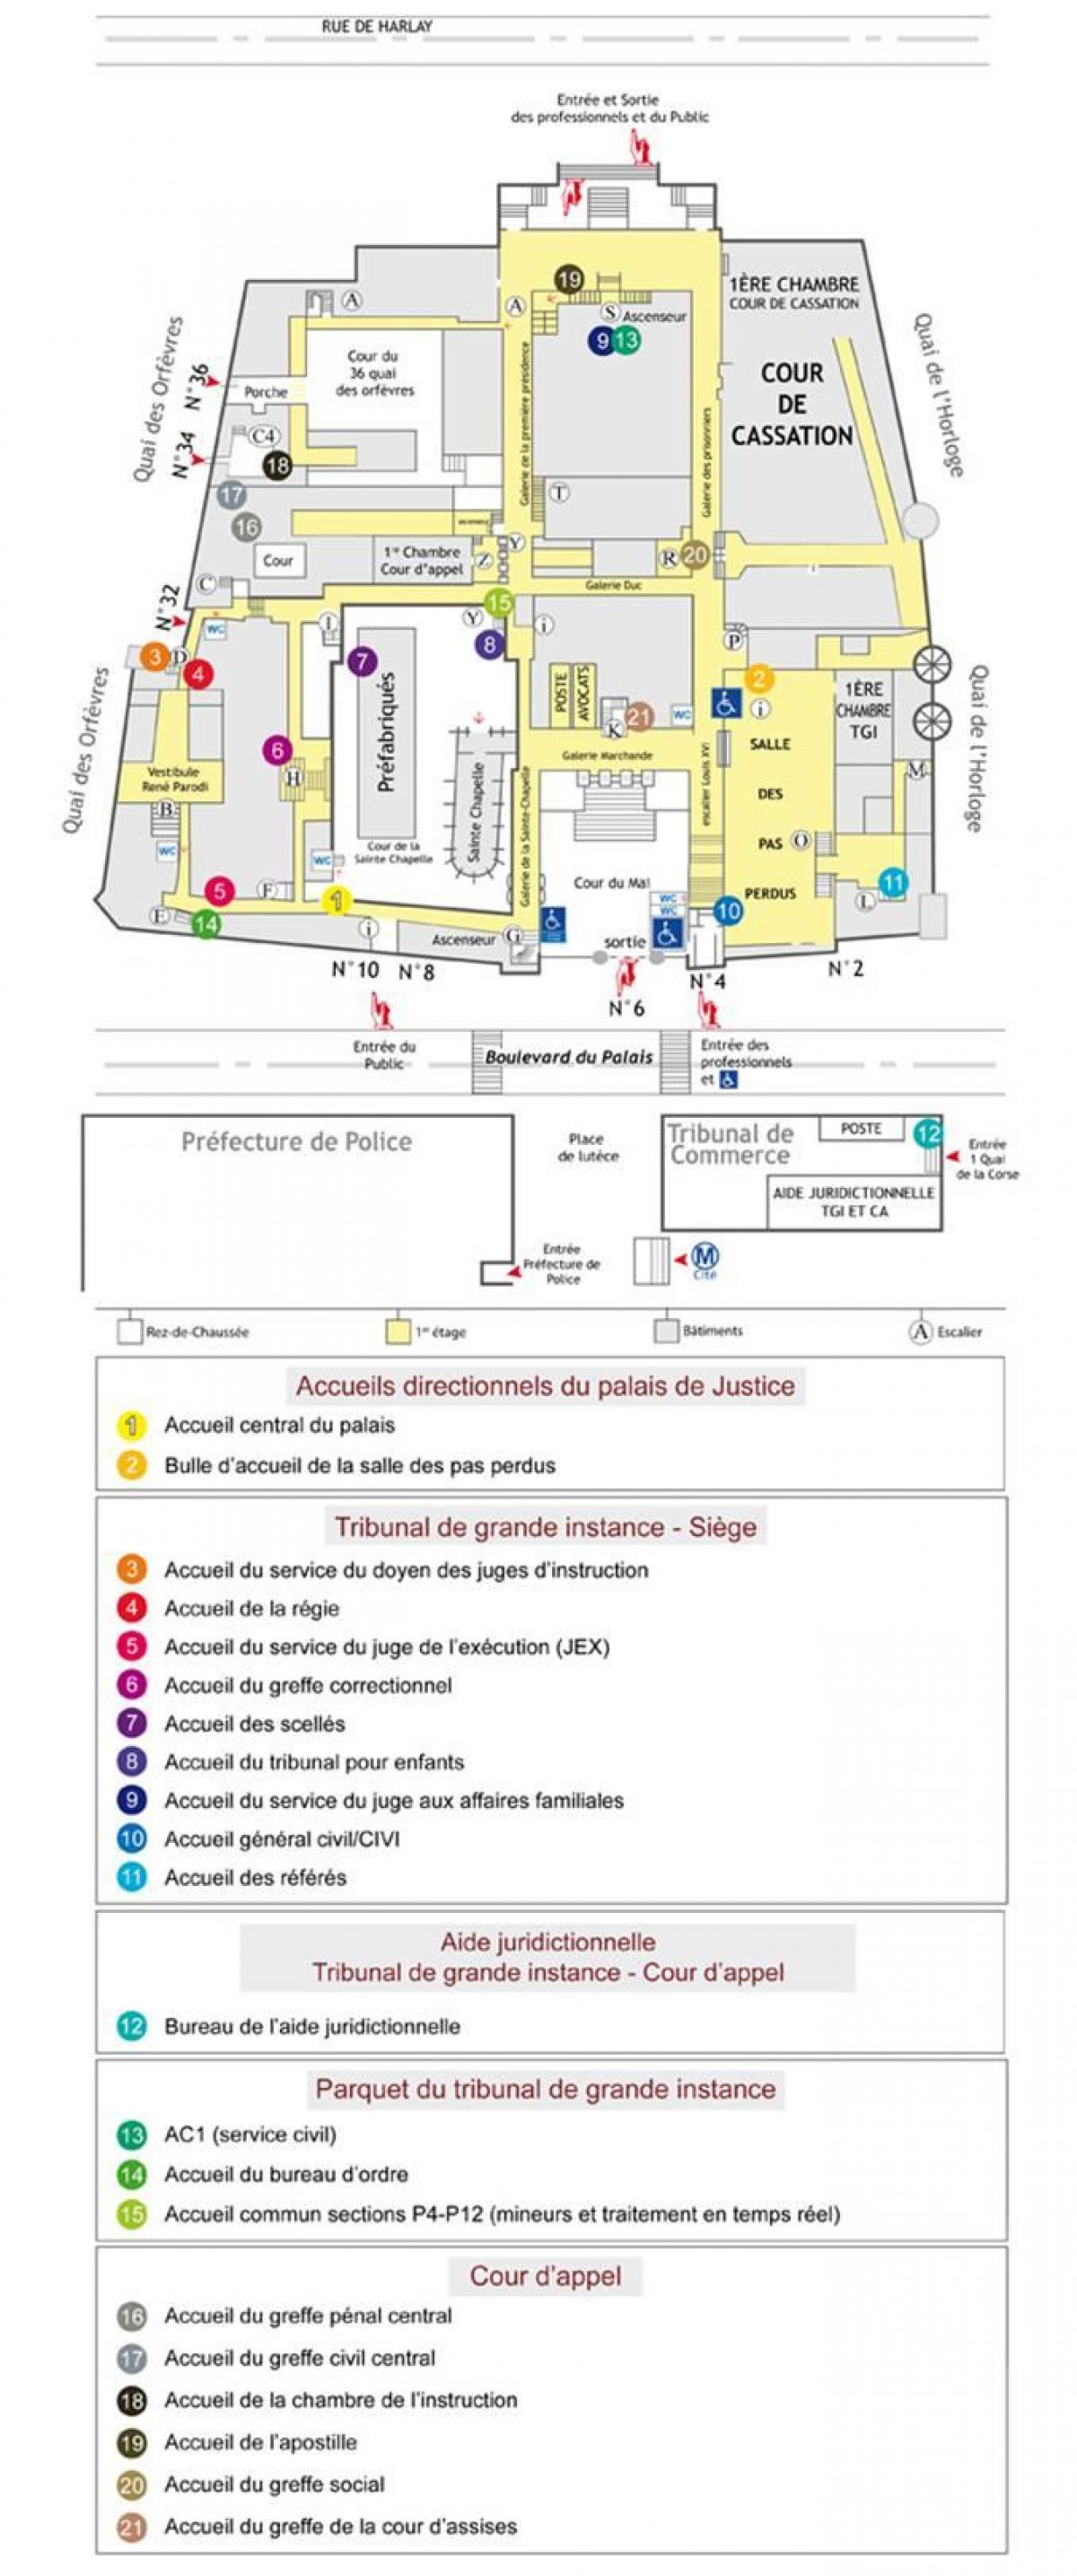 Mappa del palazzo di Giustizia di Parigi